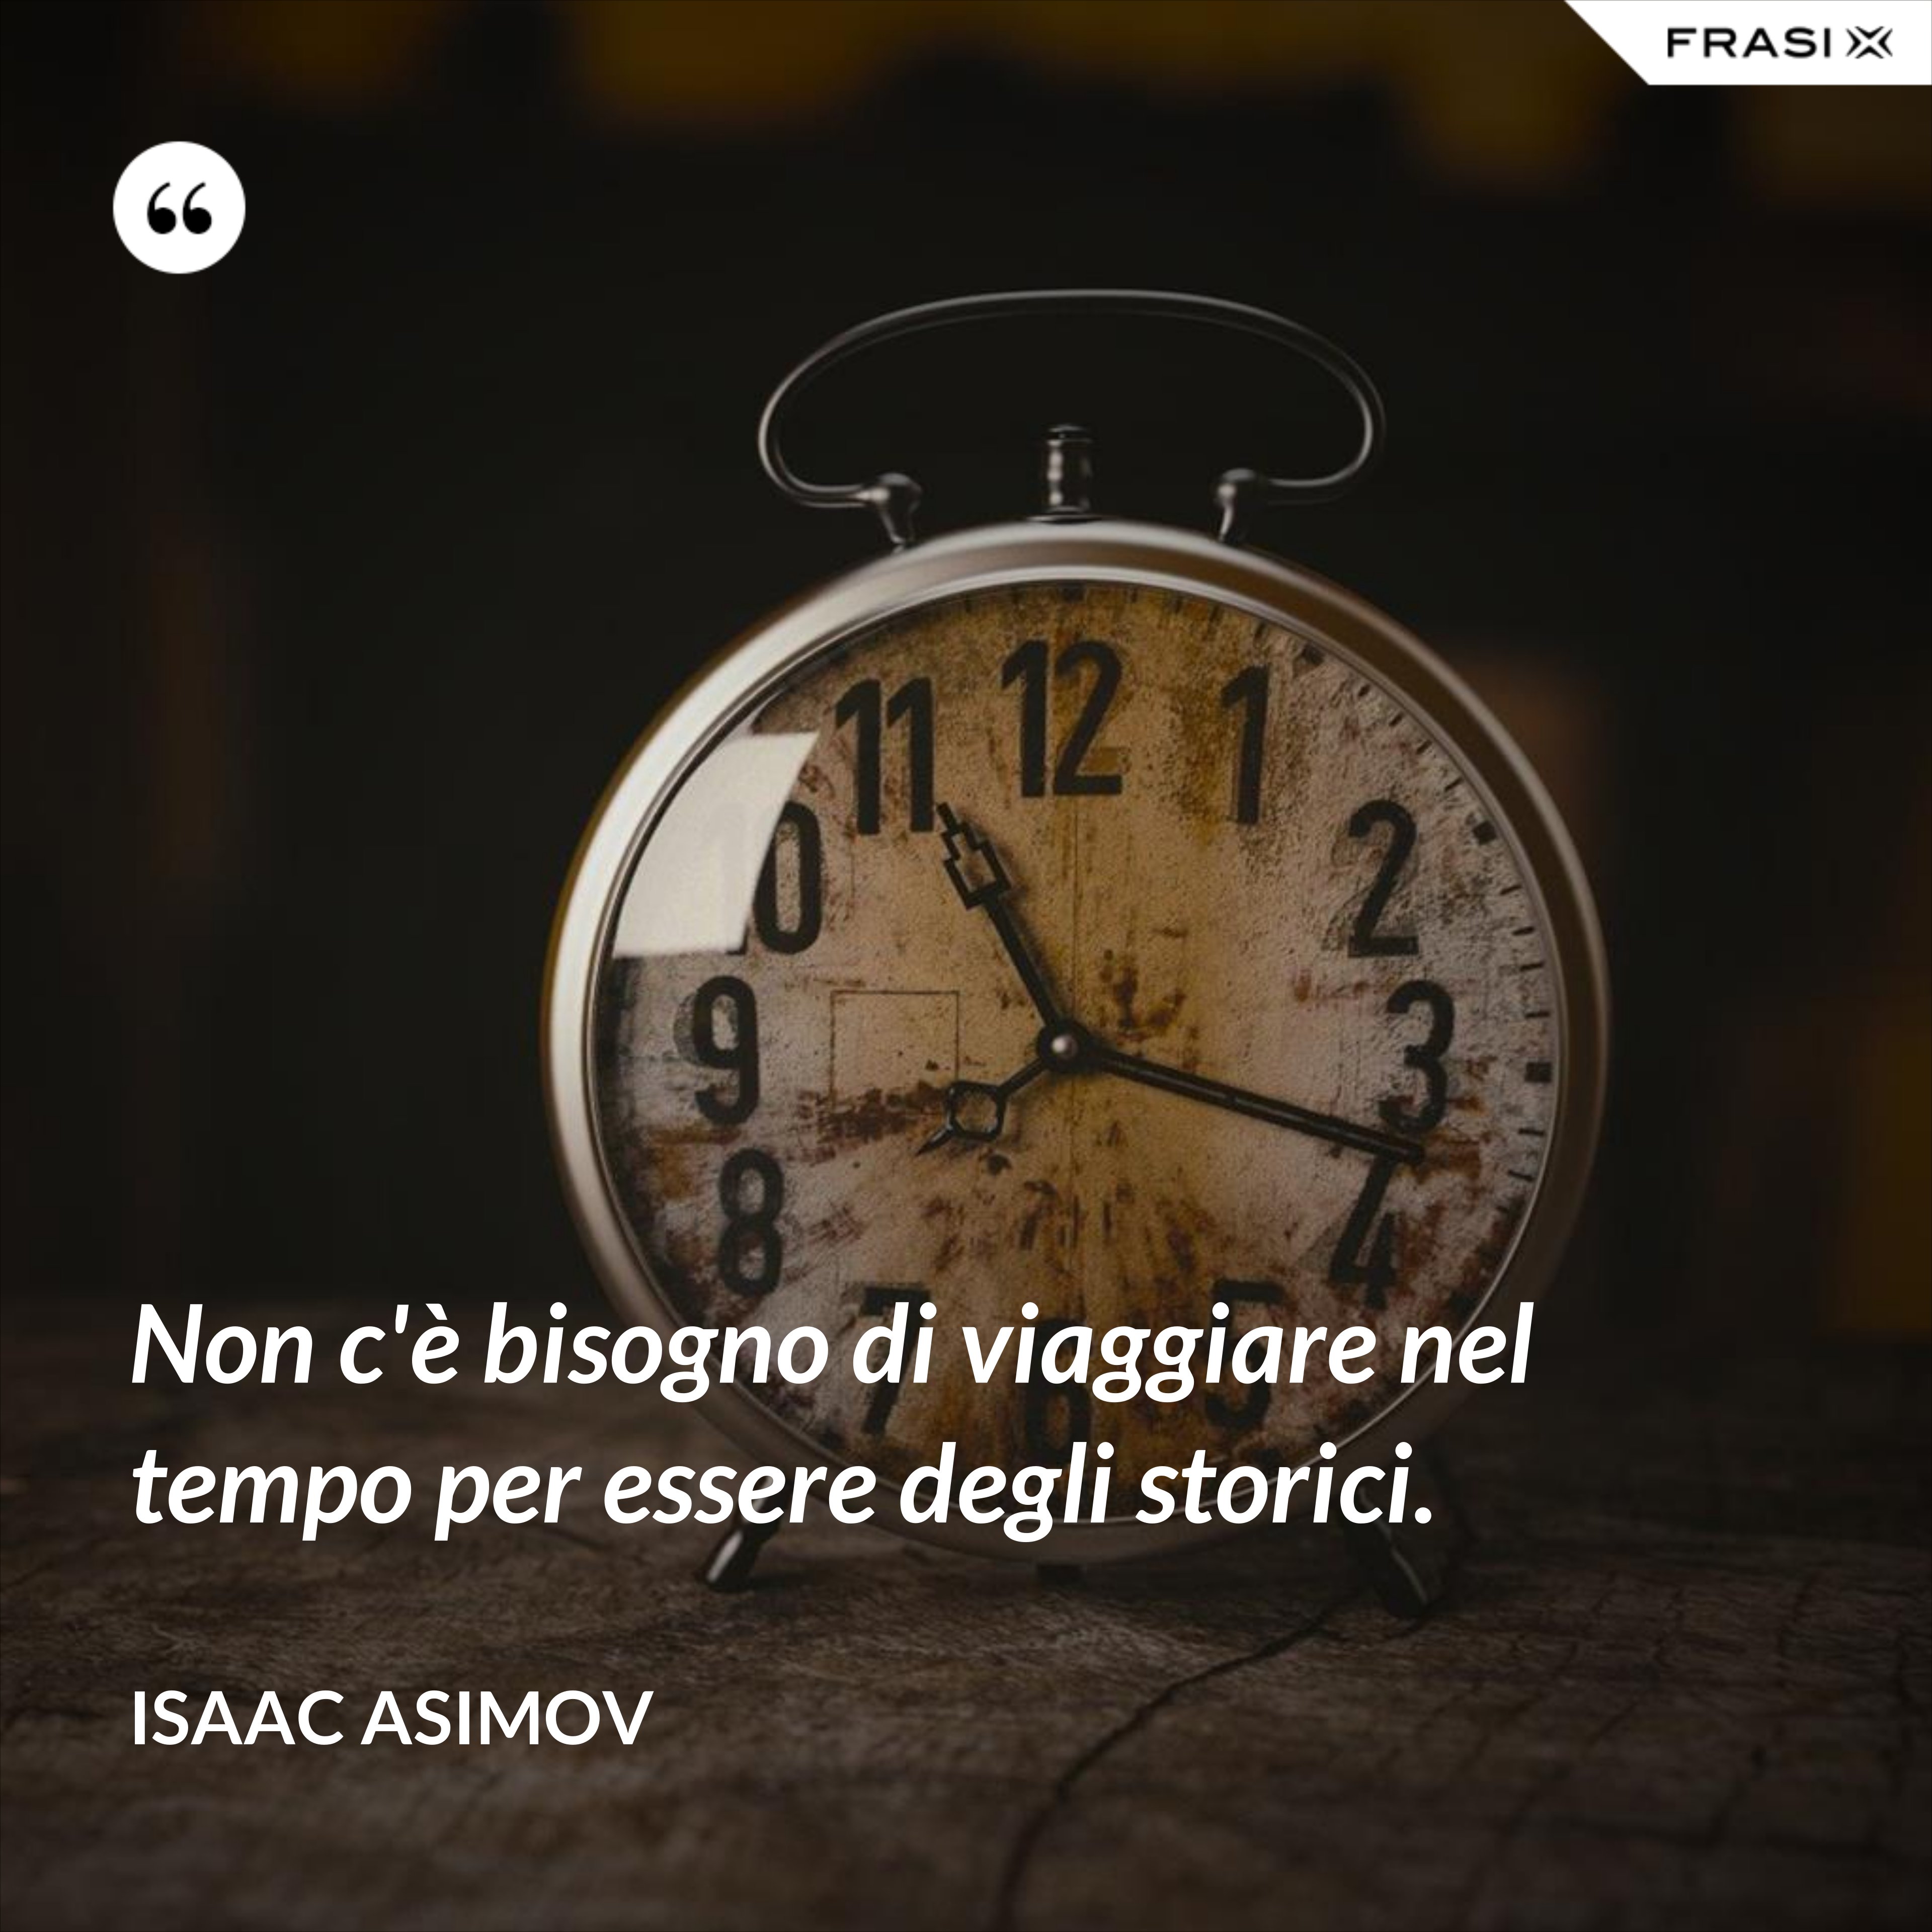 Non c'è bisogno di viaggiare nel tempo per essere degli storici. - Isaac Asimov